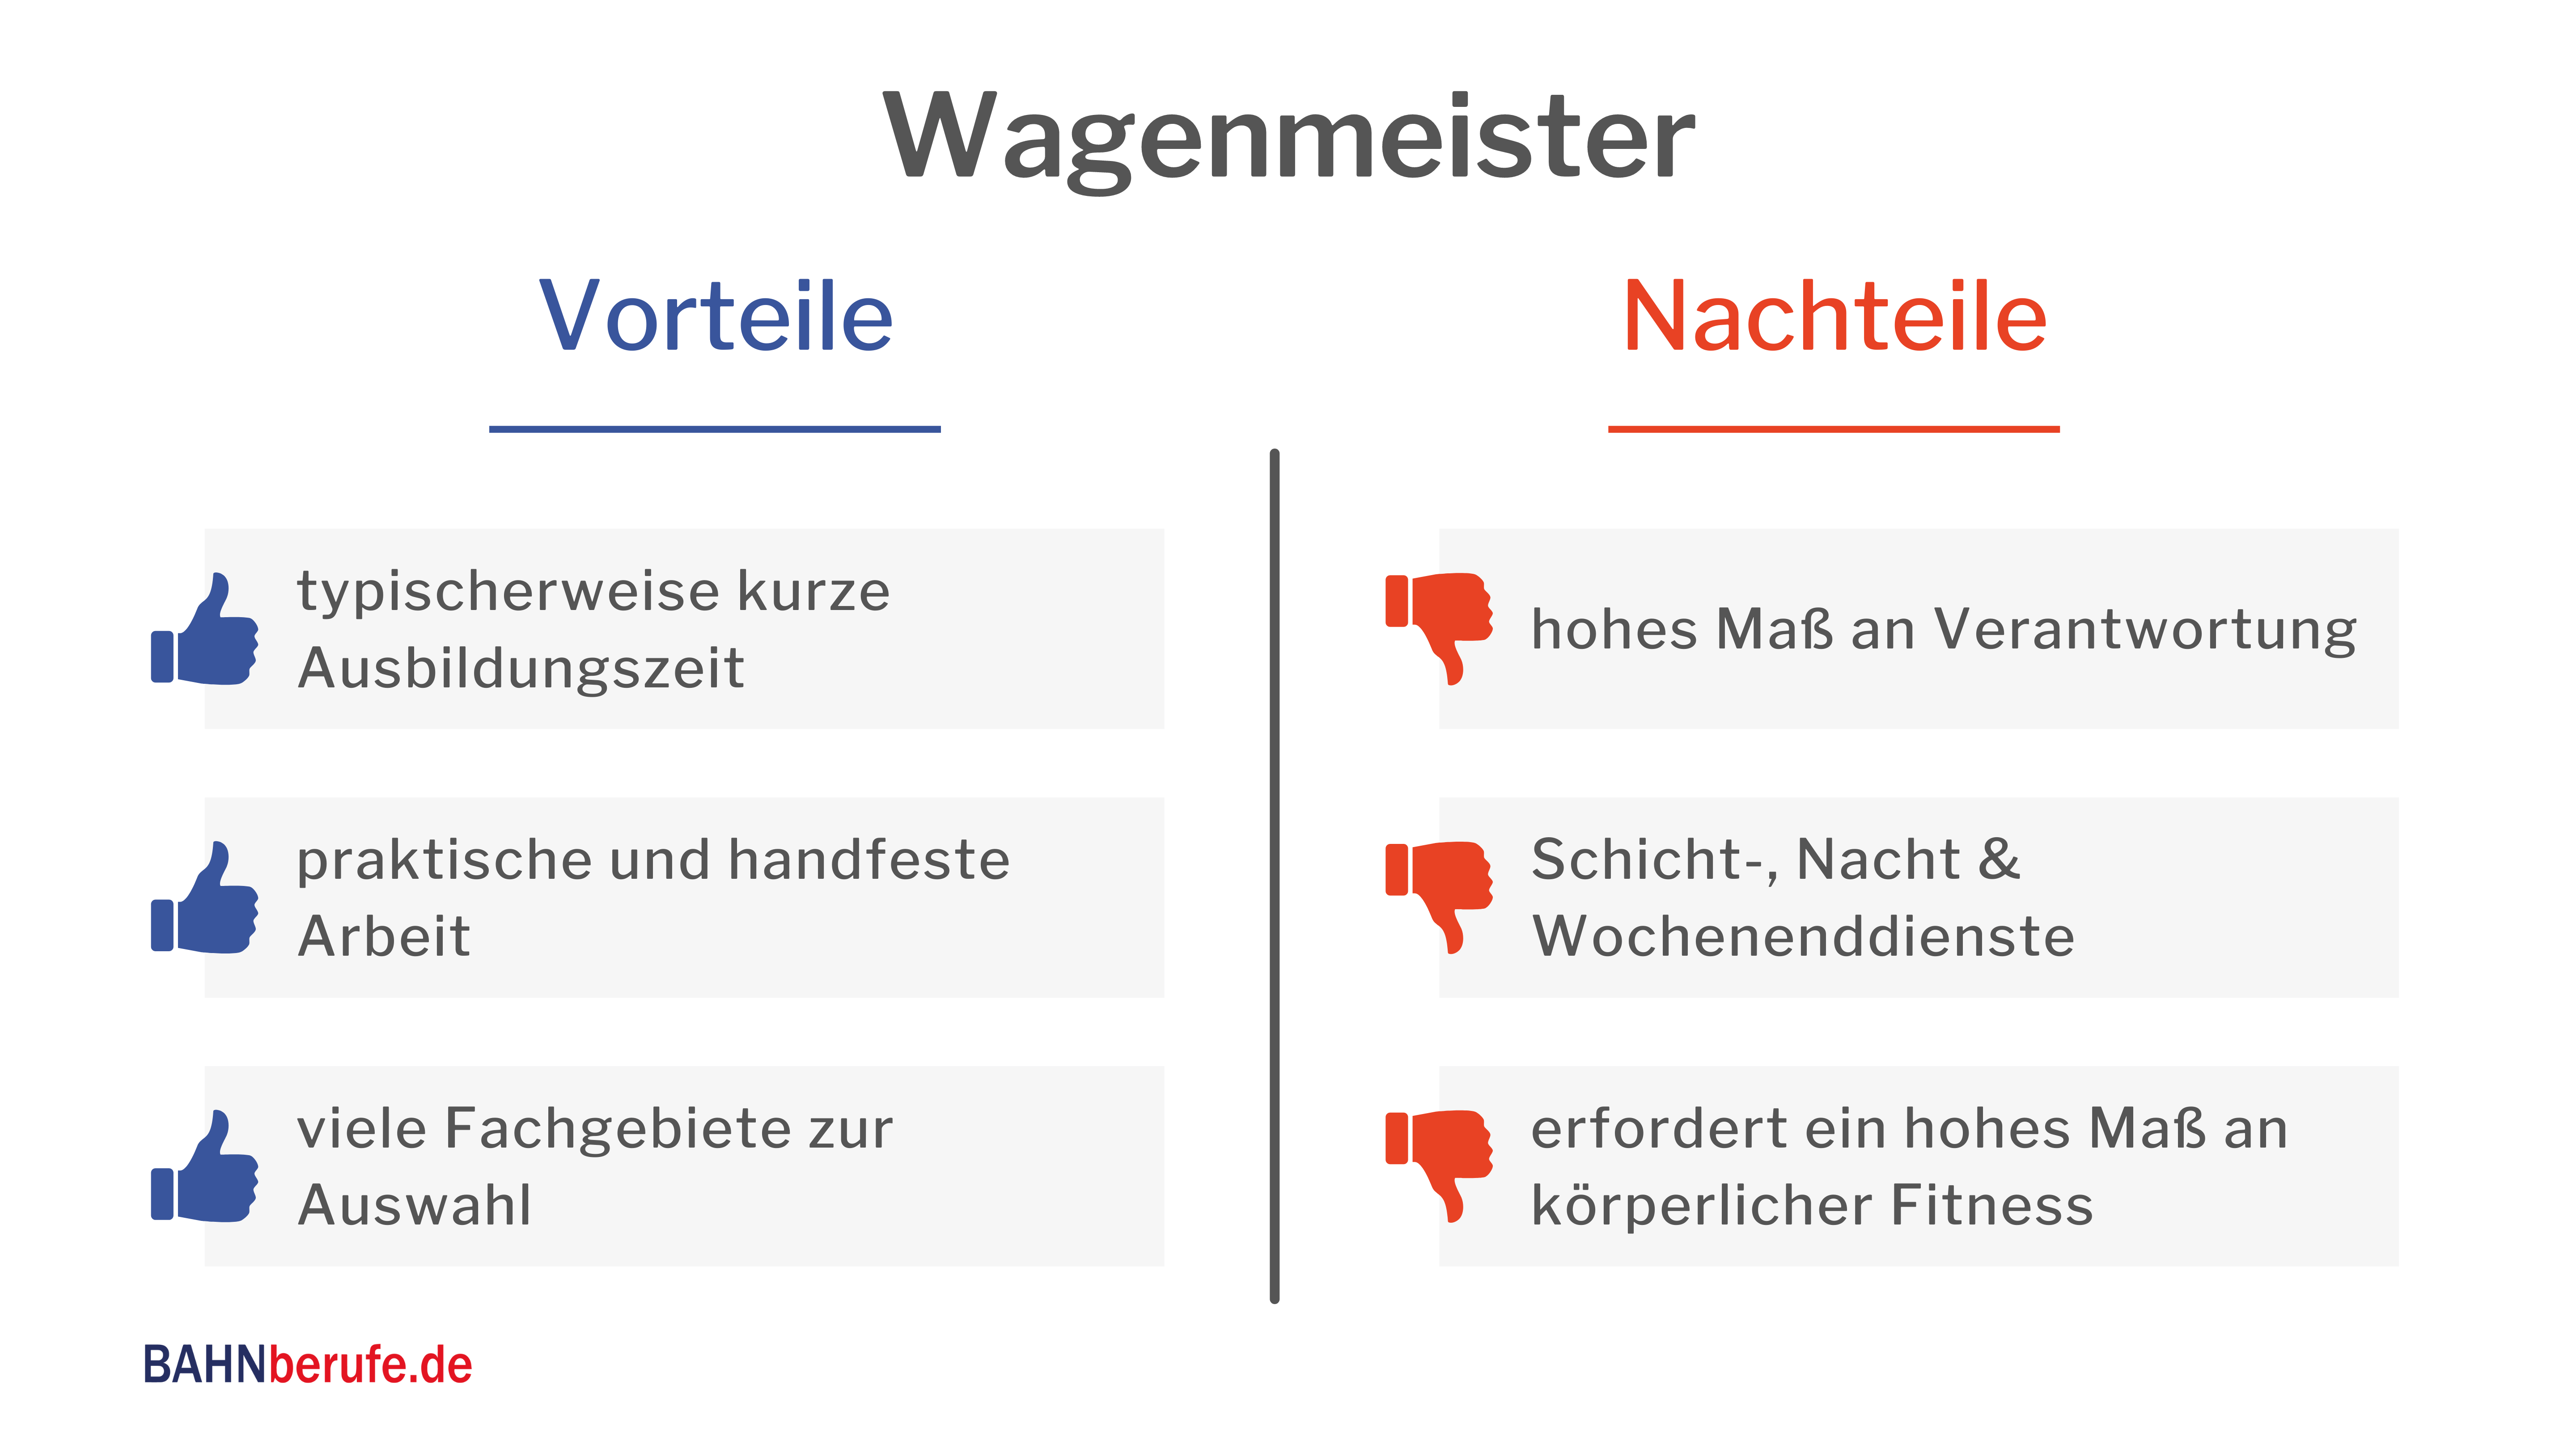 Berufsbild - Wagonmeister Engineering - Vorteile Nachteile - bahnberufe.de